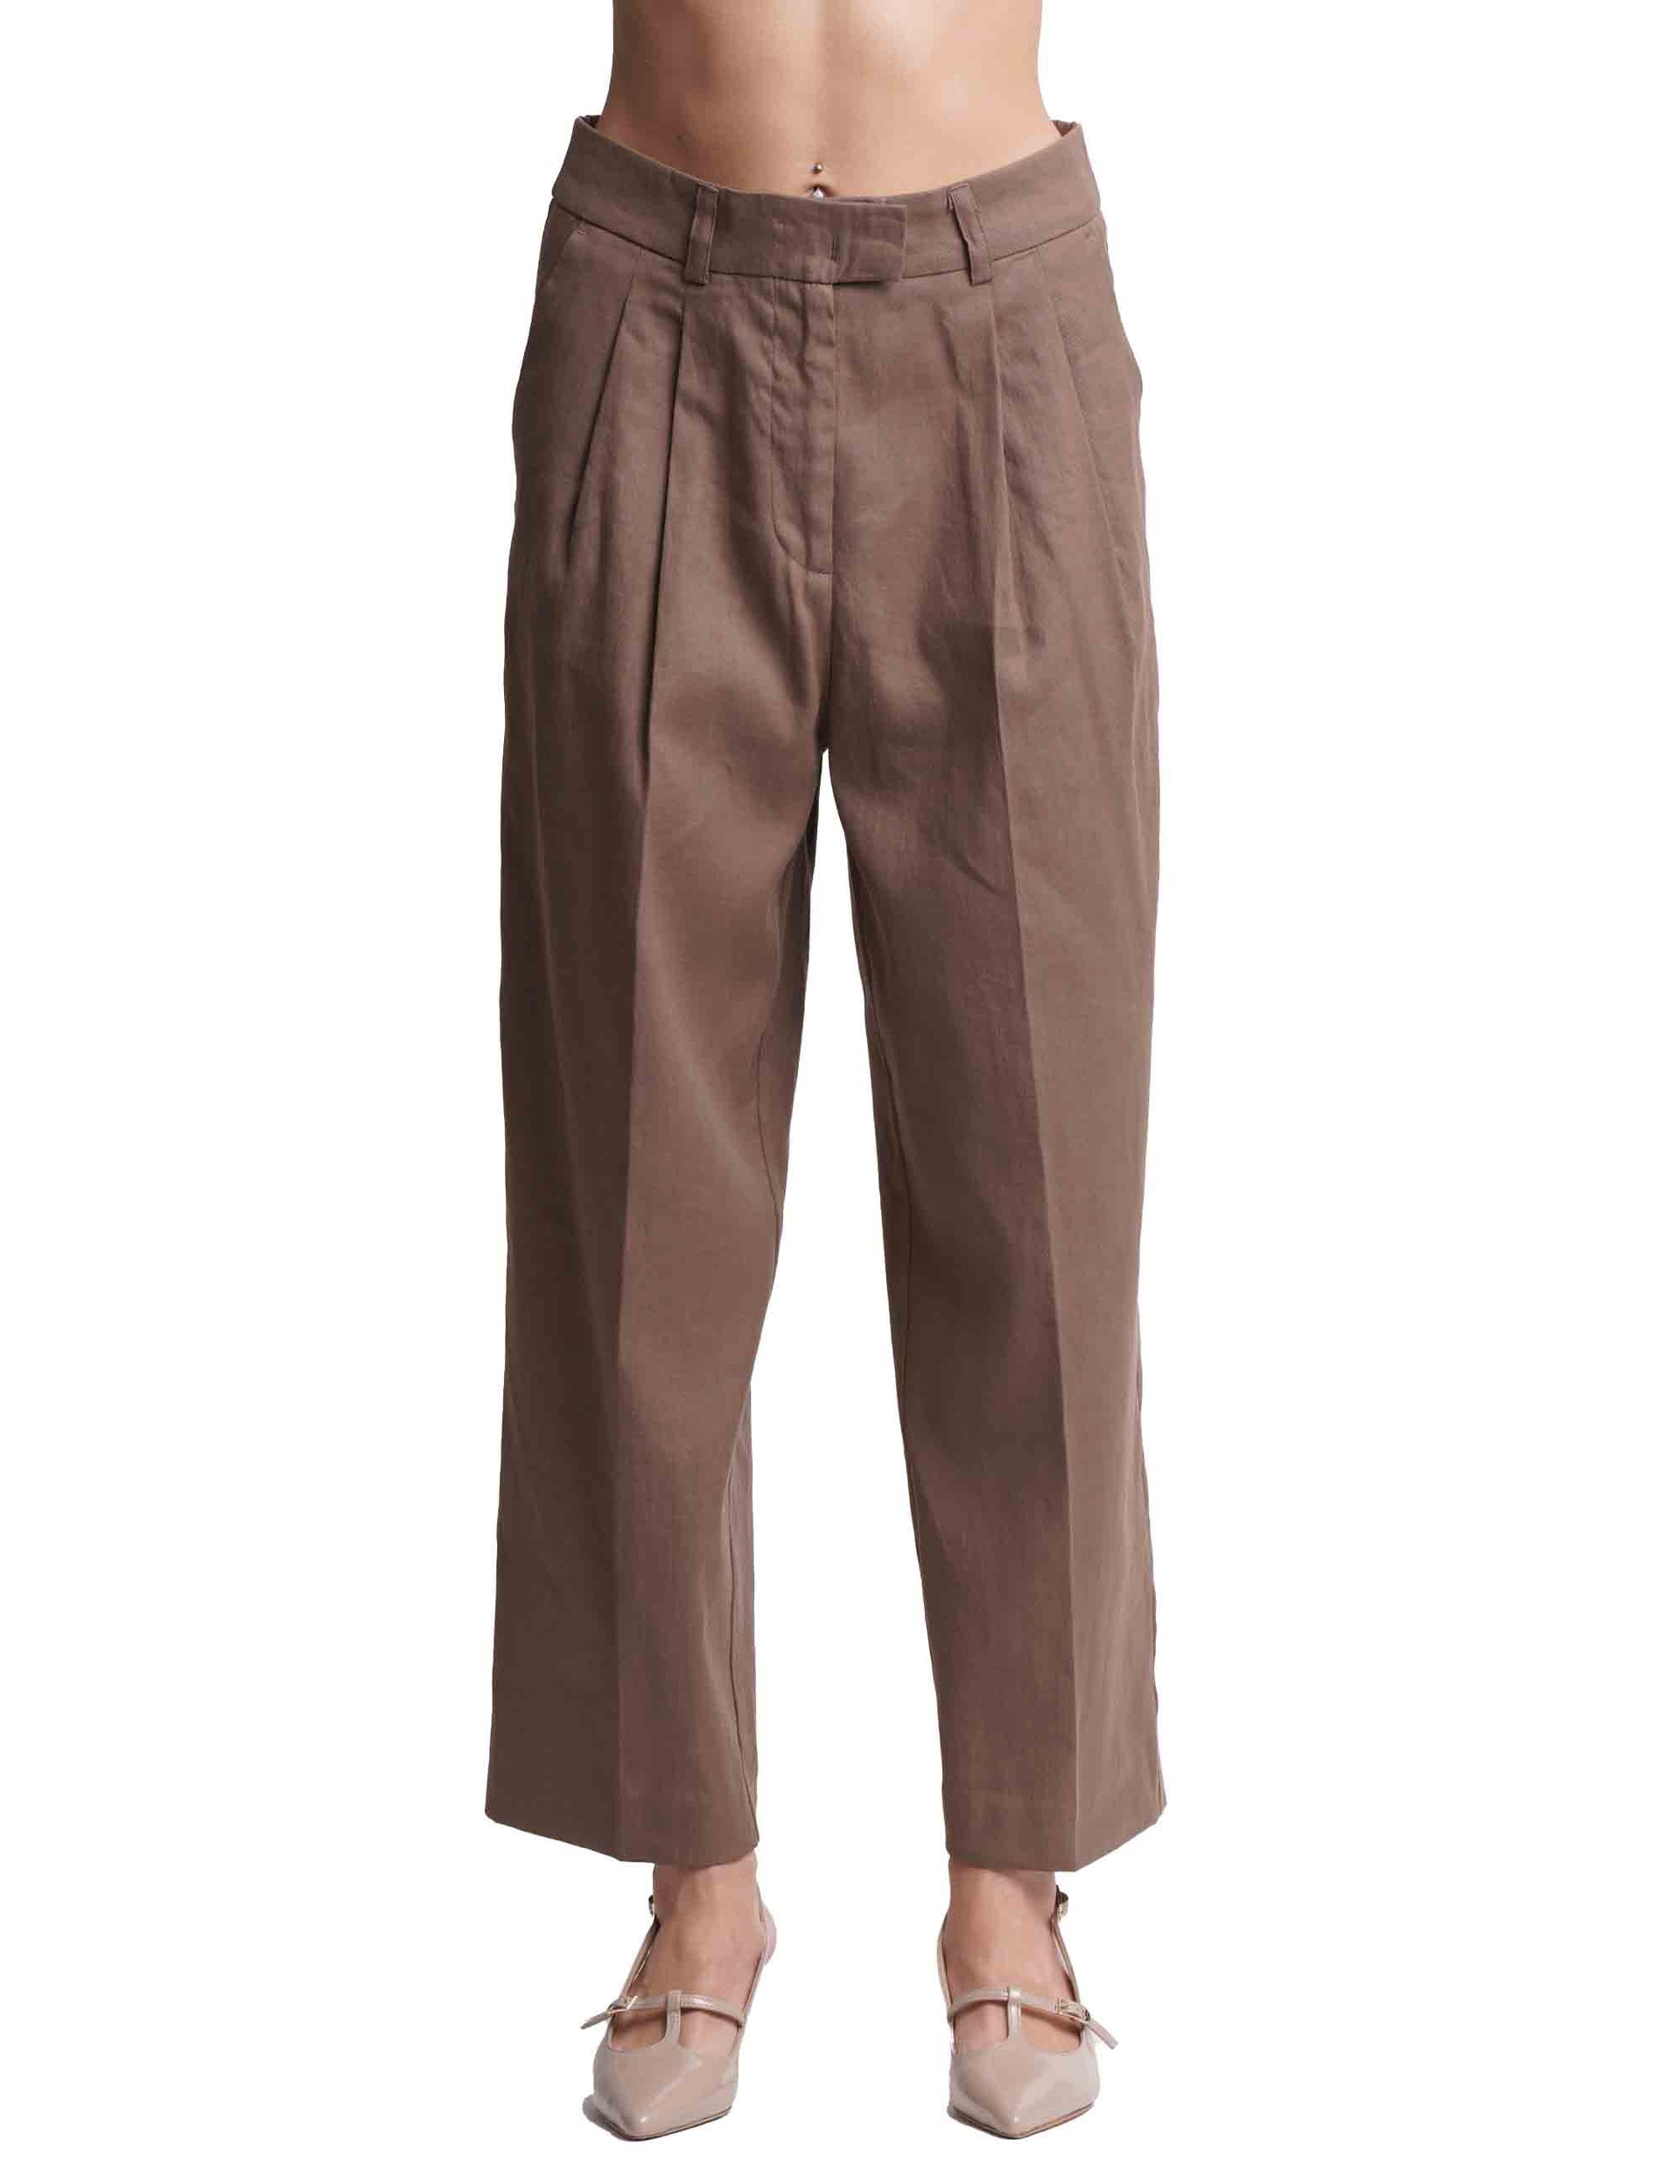 Pantaloni donna Linen in misto lino e cotone marrone